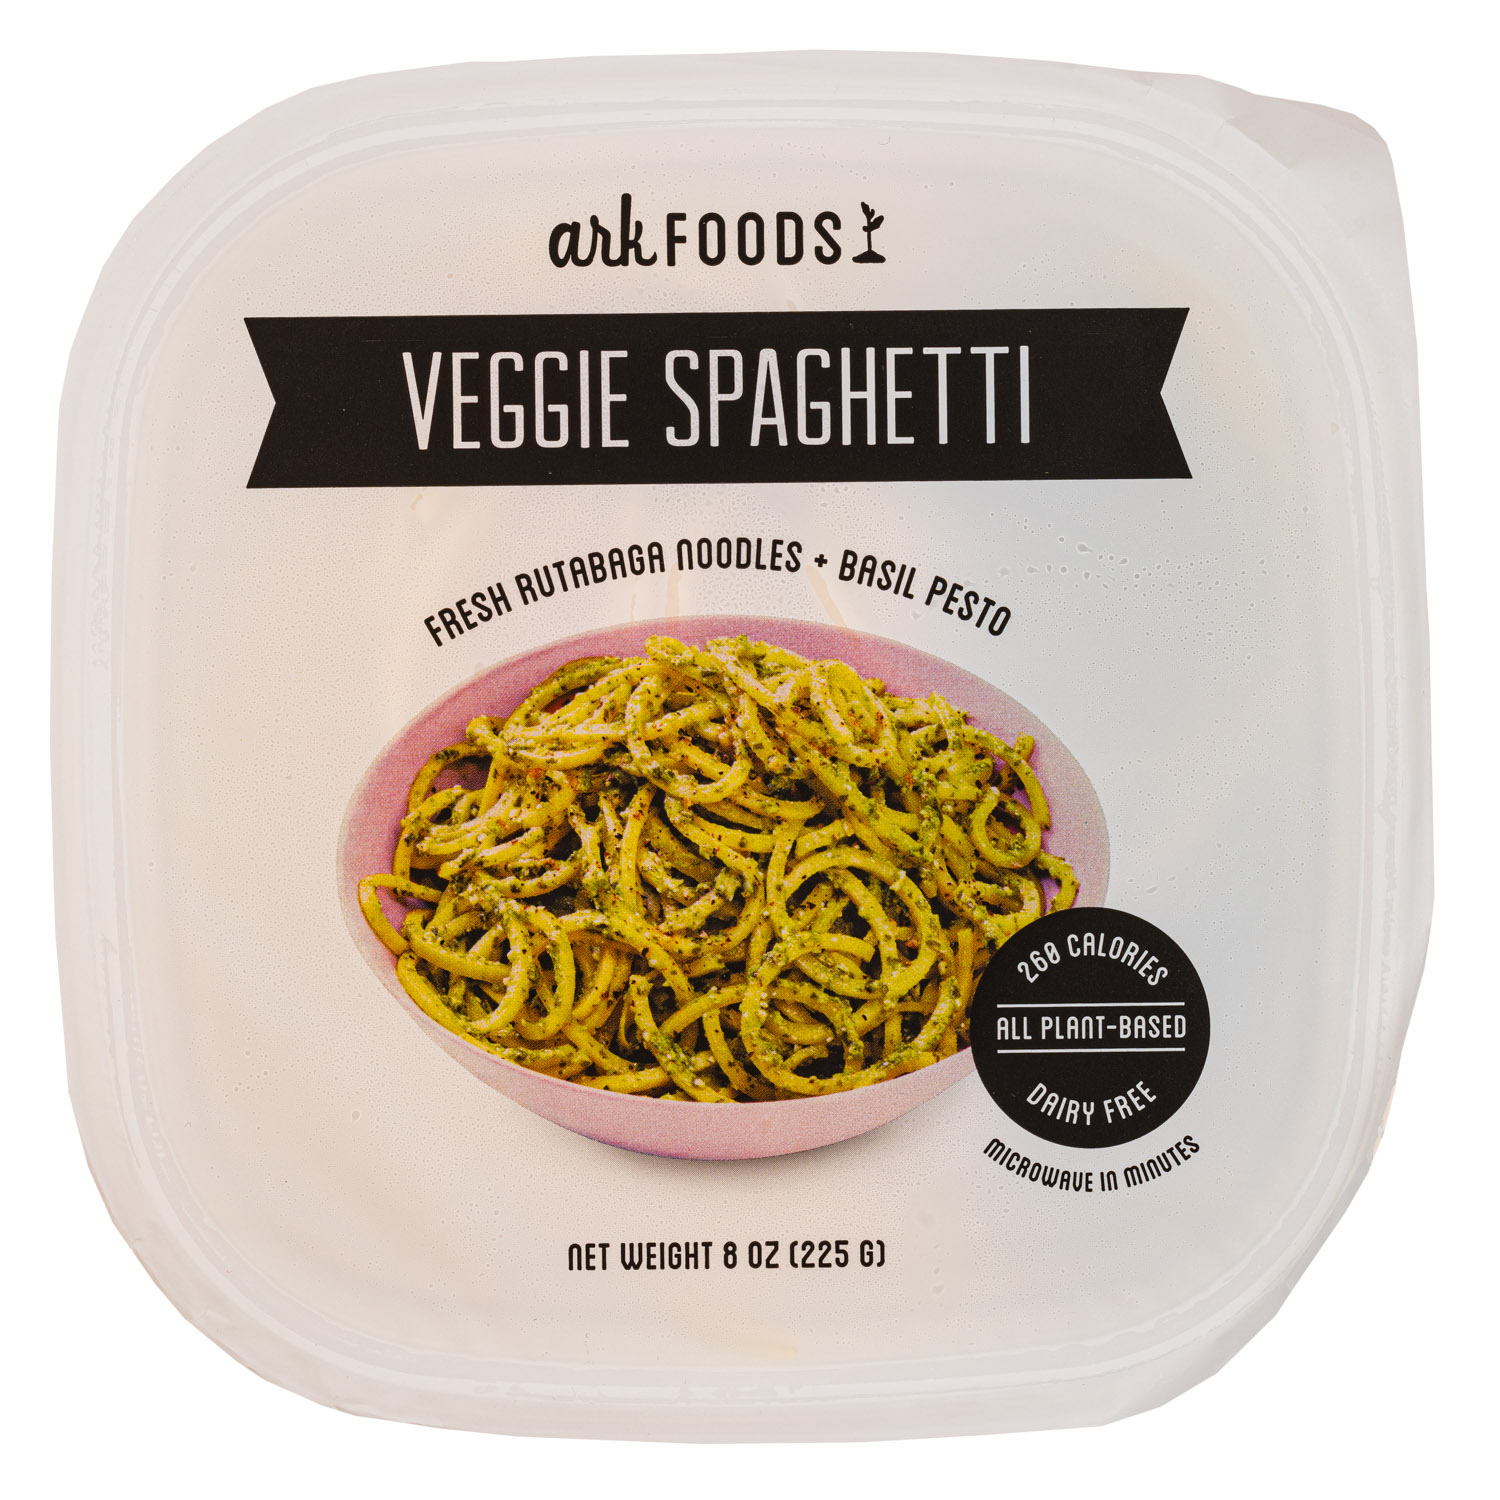 Fresh Rutabaga Noodles + Basil Pesto (2020)